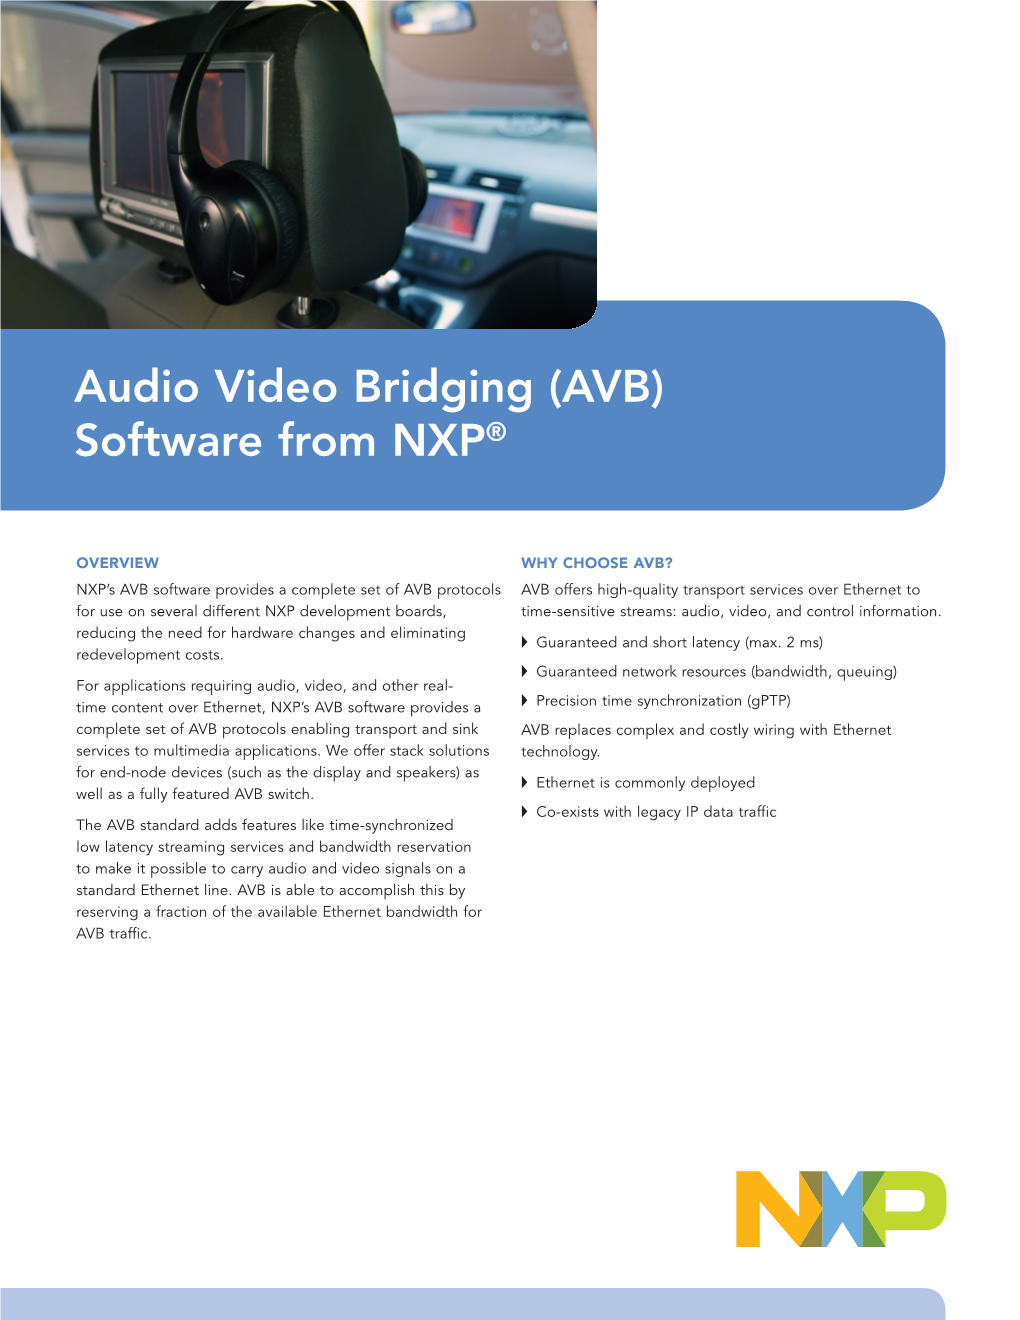 Audio Video Bridging Fact Sheet